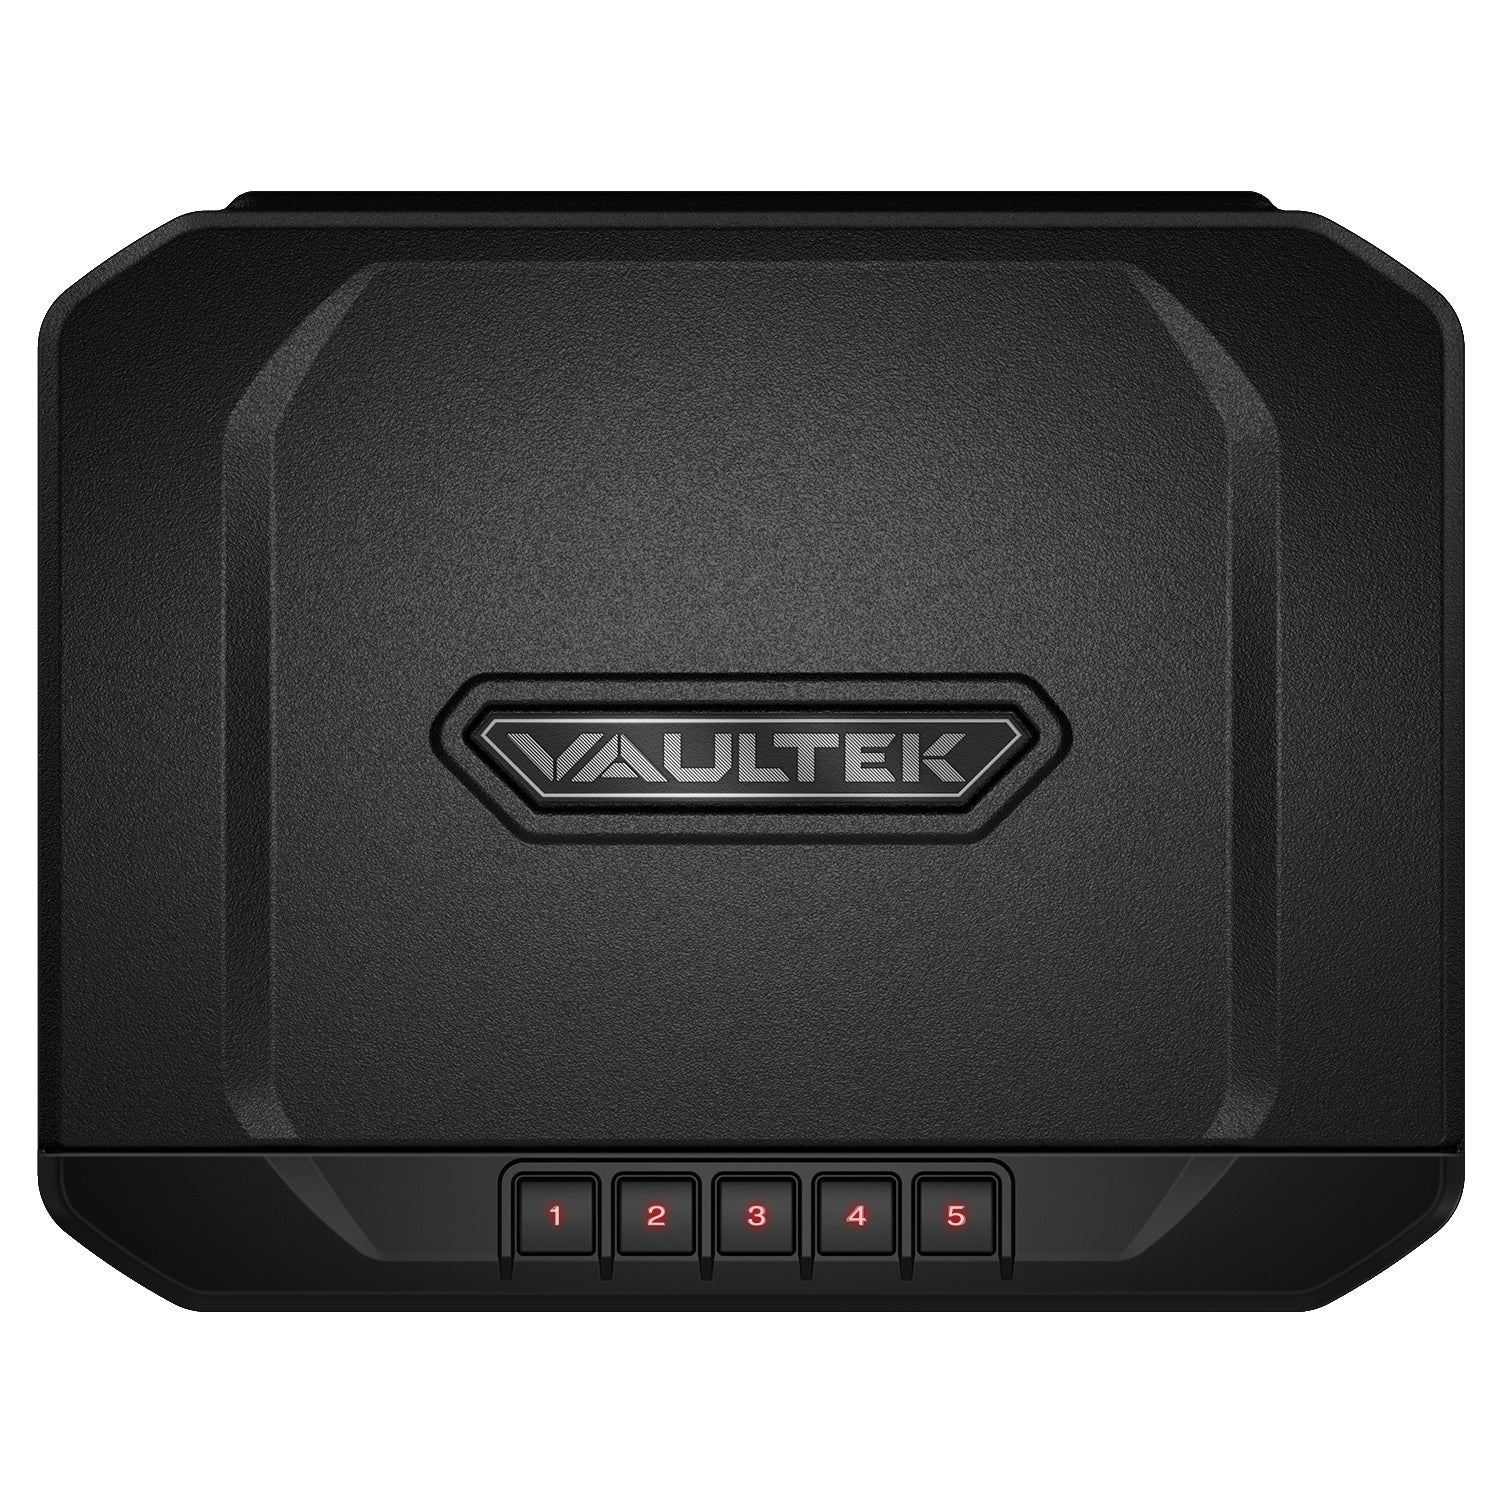 Vaultek - 20 series ve20 compact keypad gun safe - MODLOCK